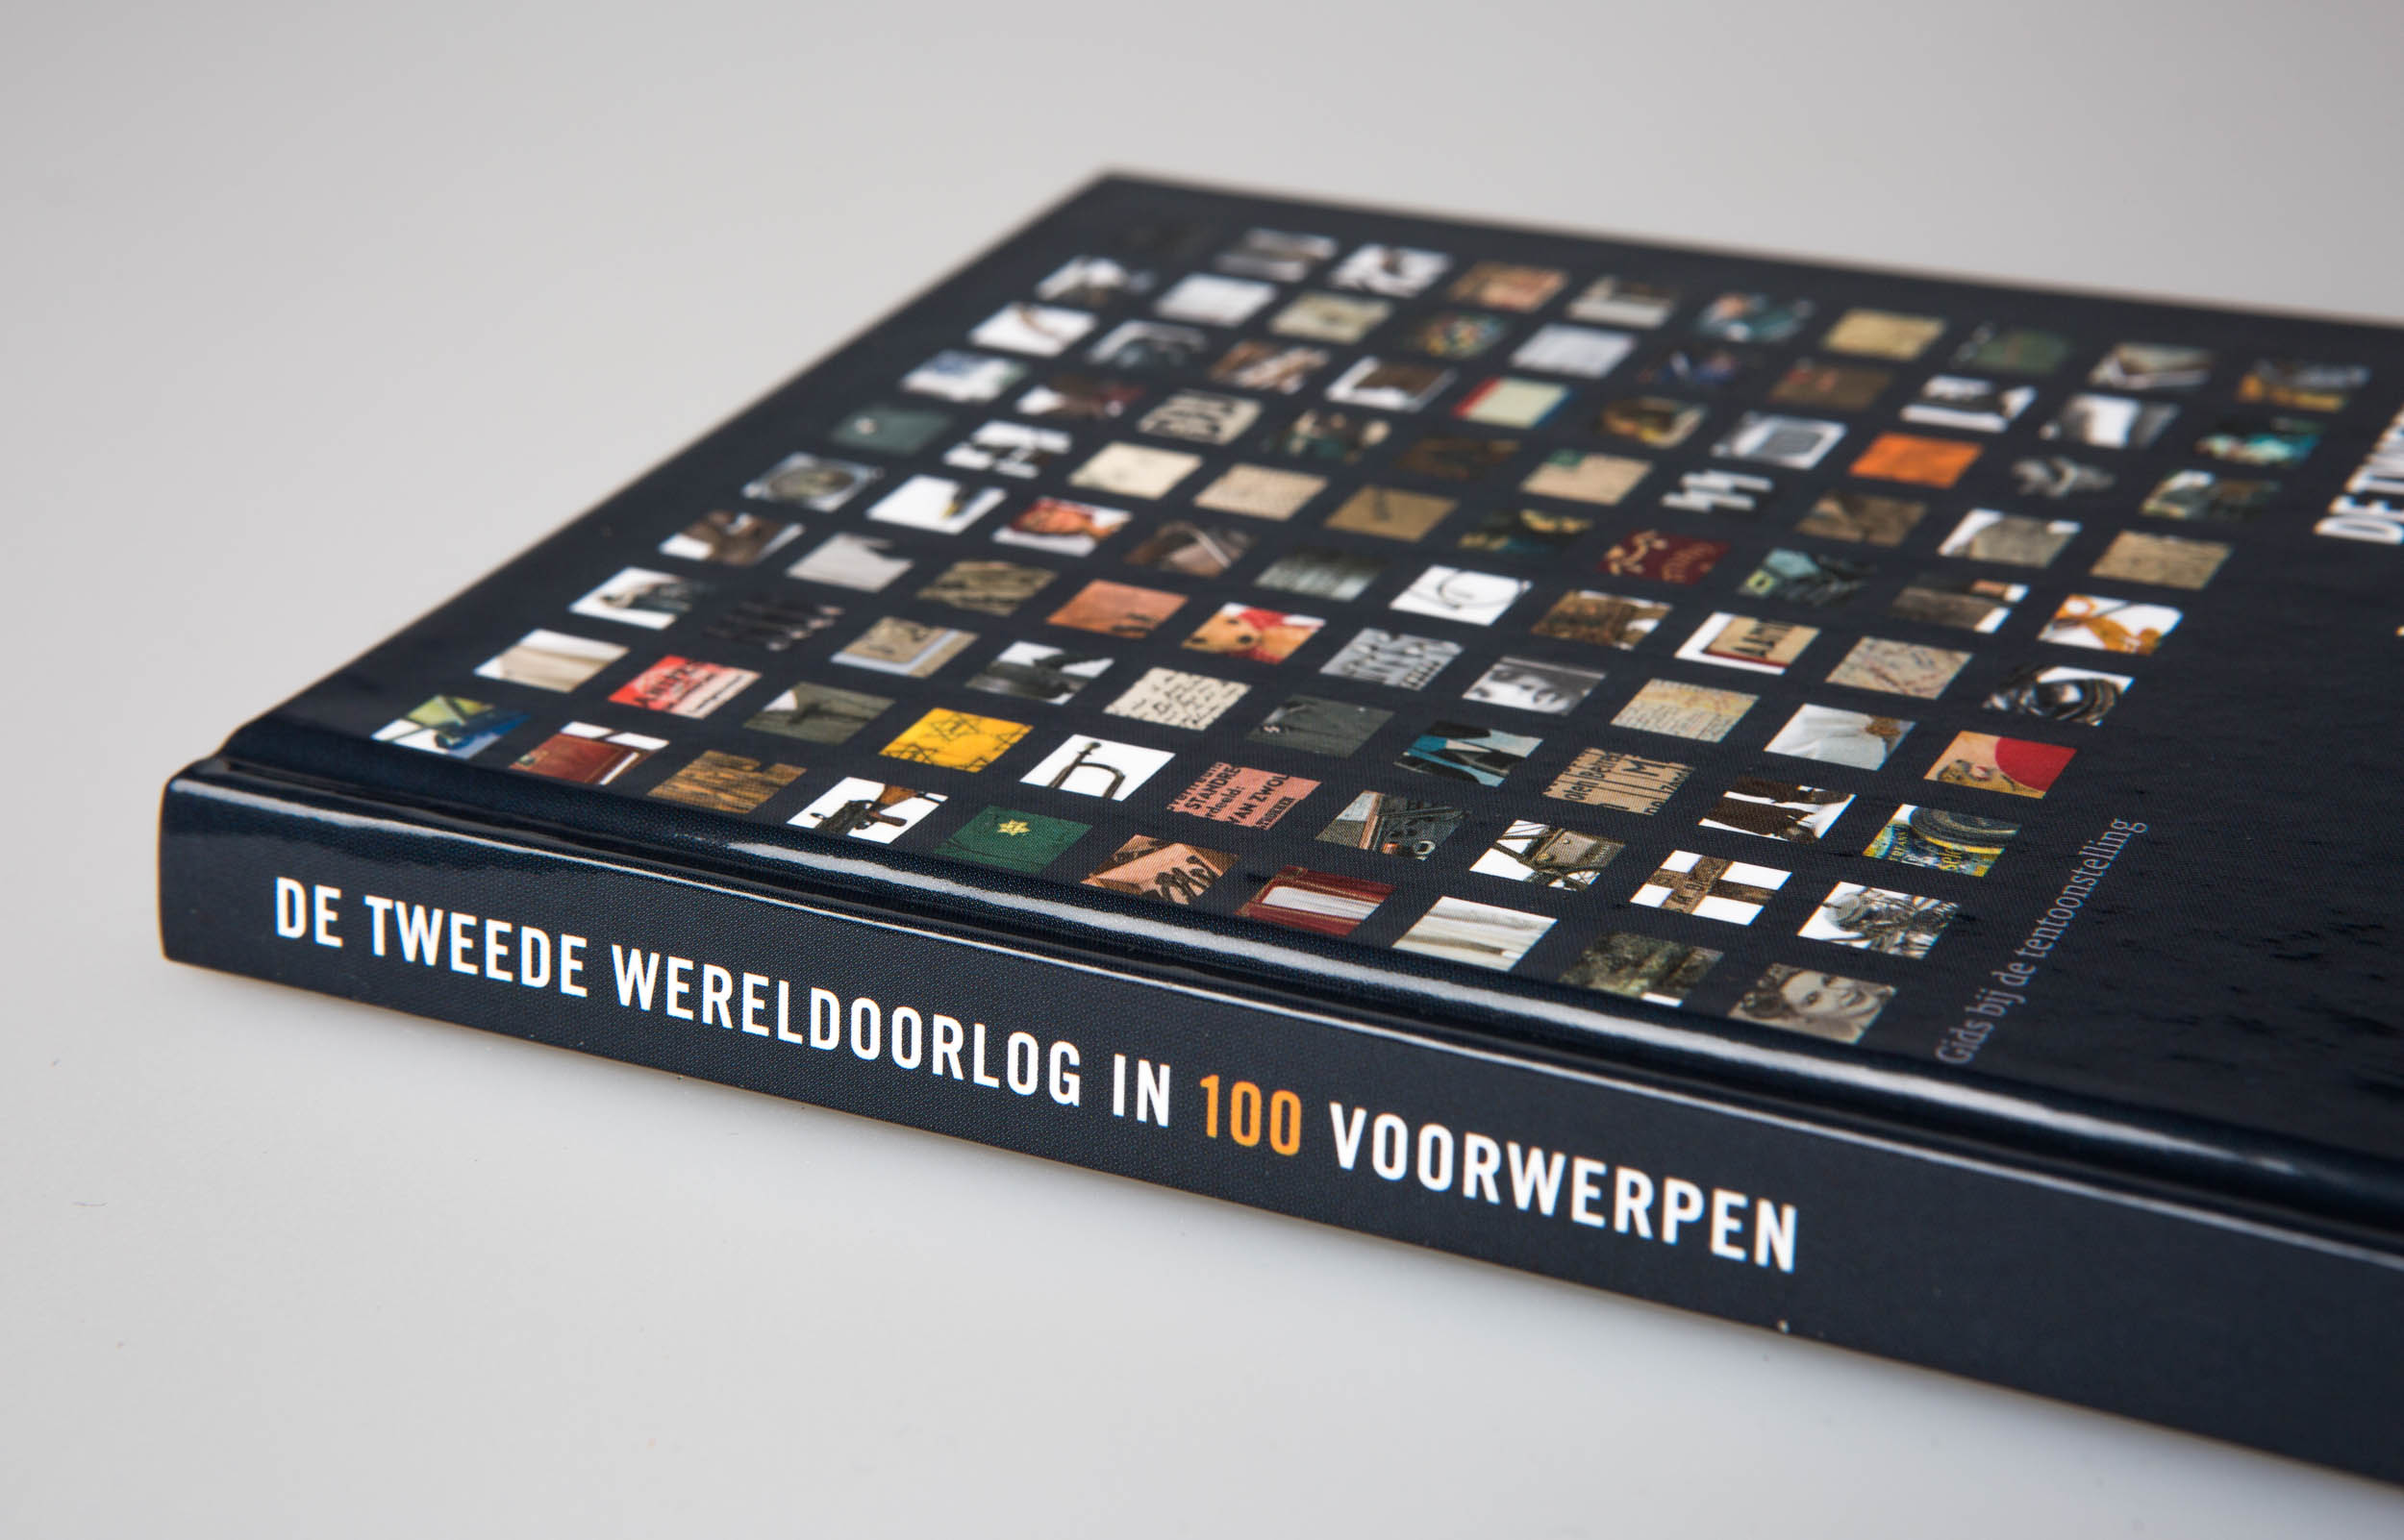 Fotografie voor boek en expositie in de kunsthal Rotterdam. Boekomslag